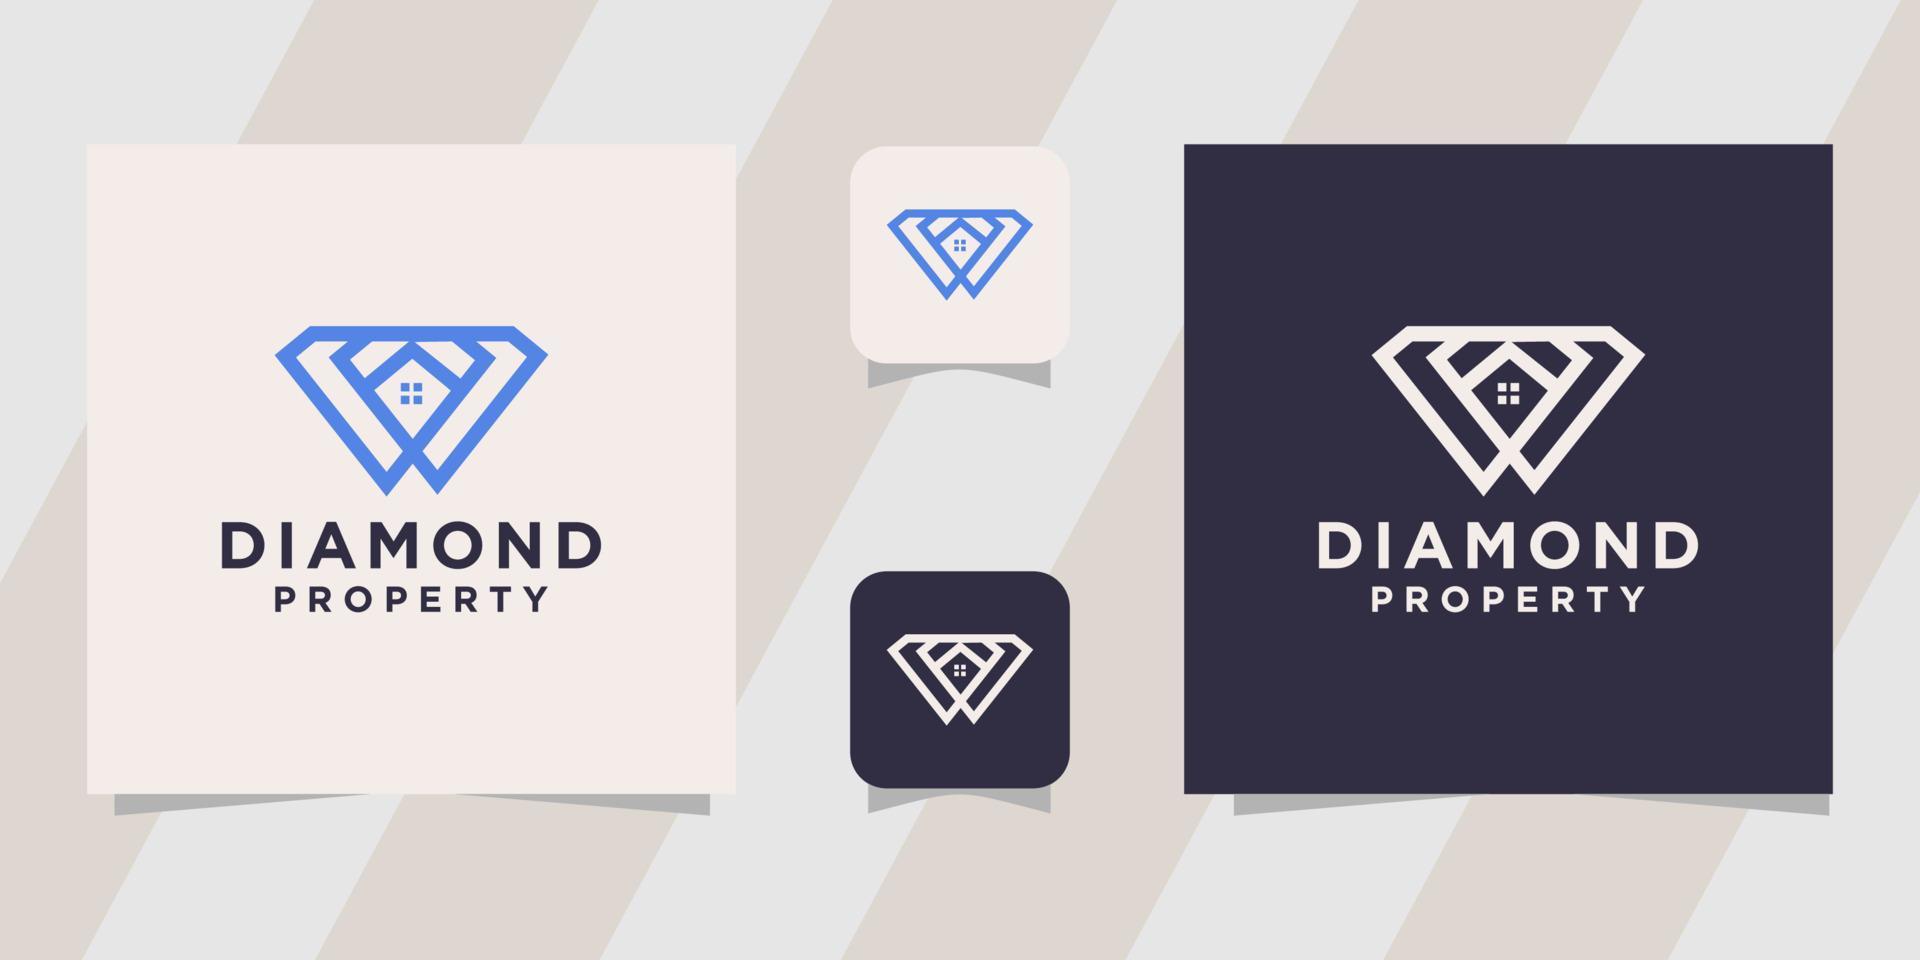 diamond property logo template vector